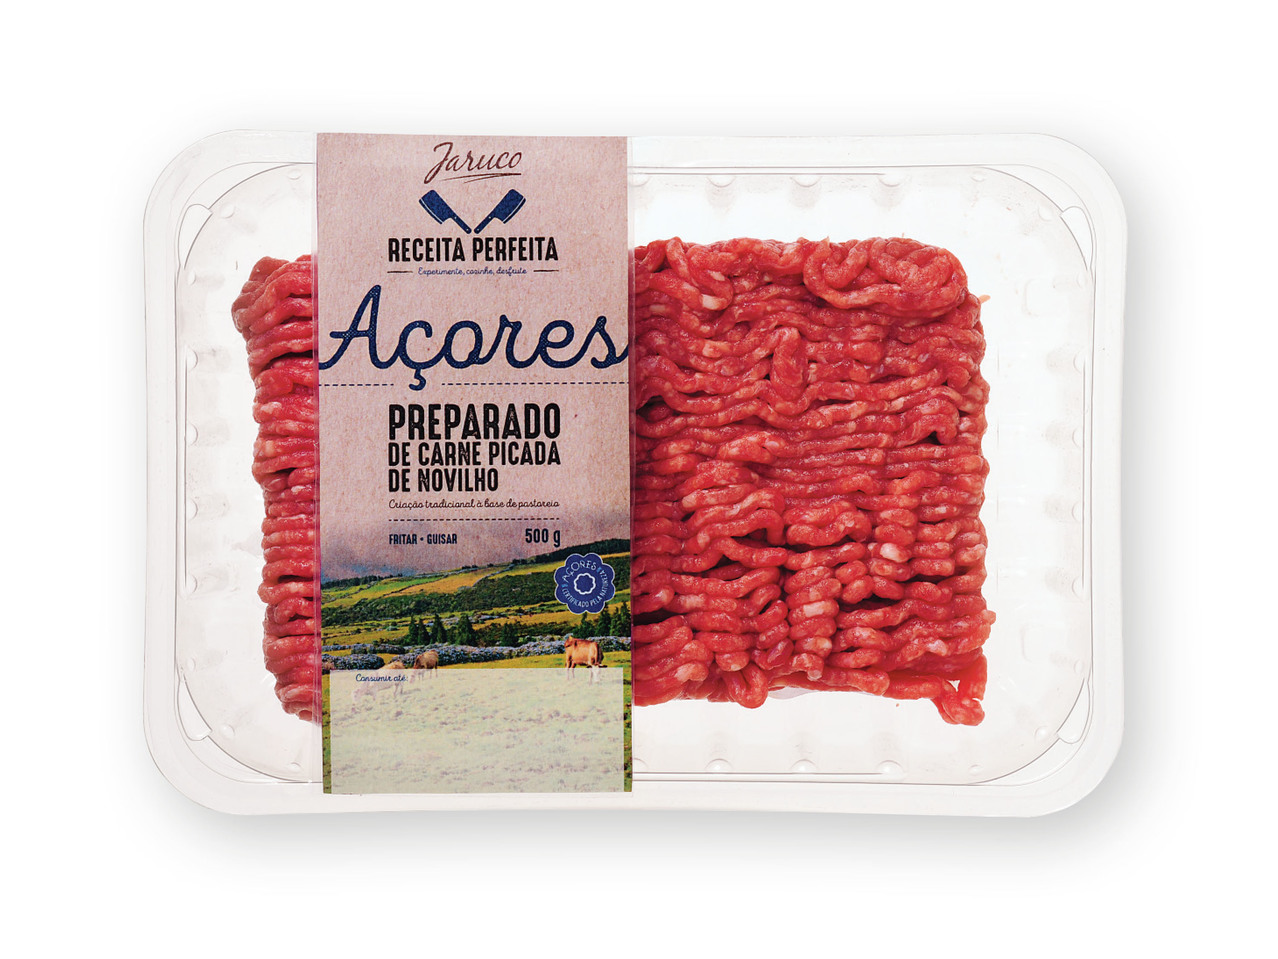 JARUCO(R) Preparado de Carne Picada de Novilho dos Açores